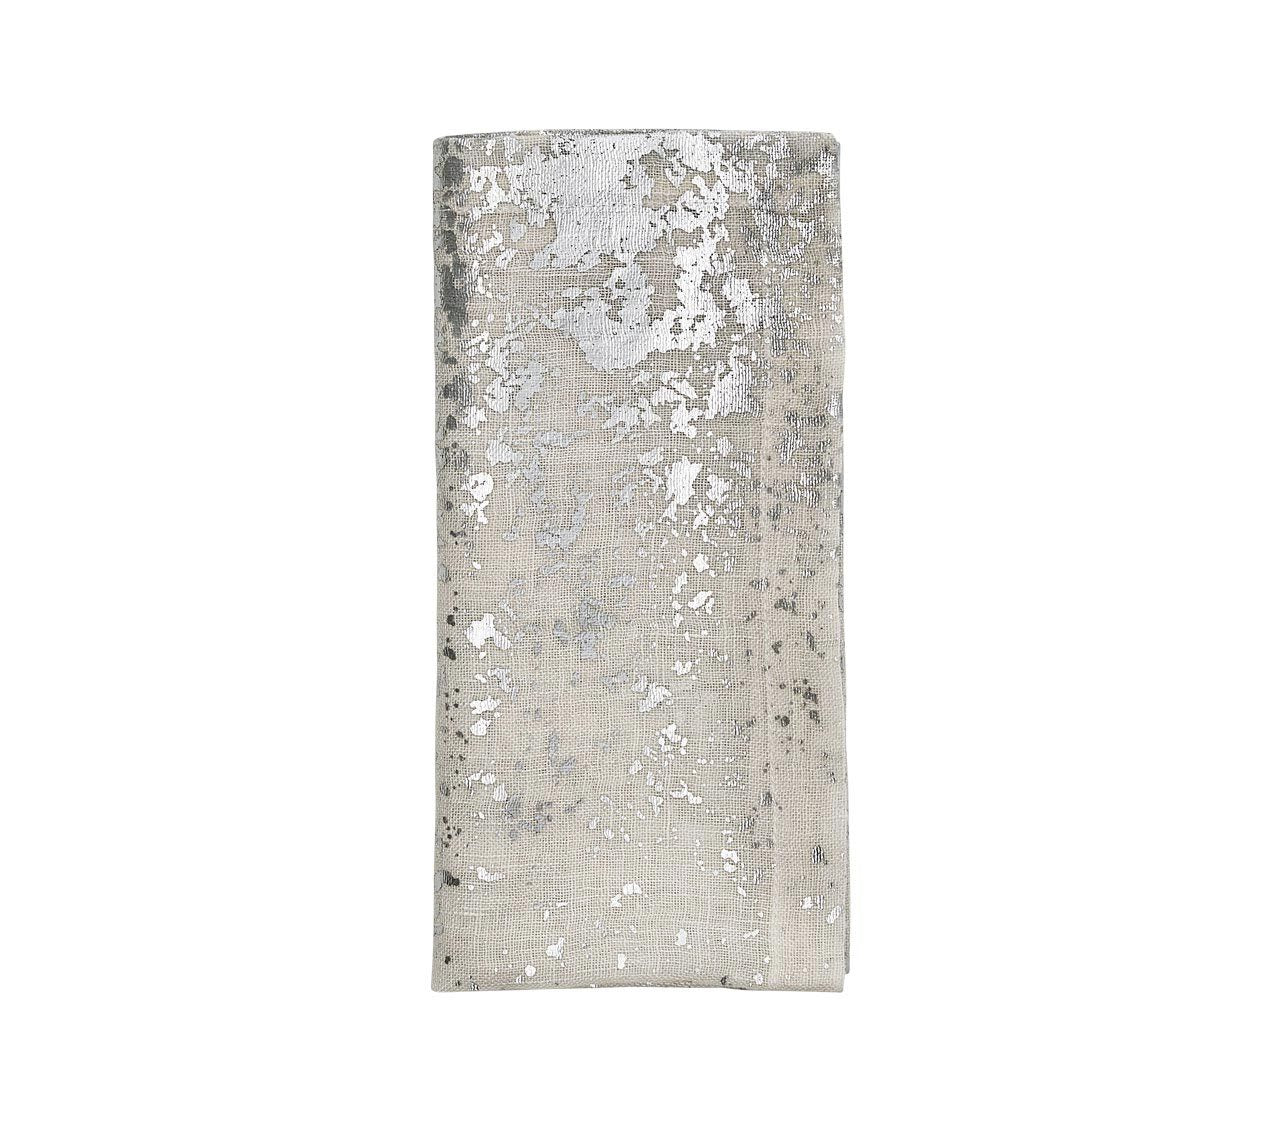 Kim Seybert Paillette White Wine Glass in Frost - Set of 4